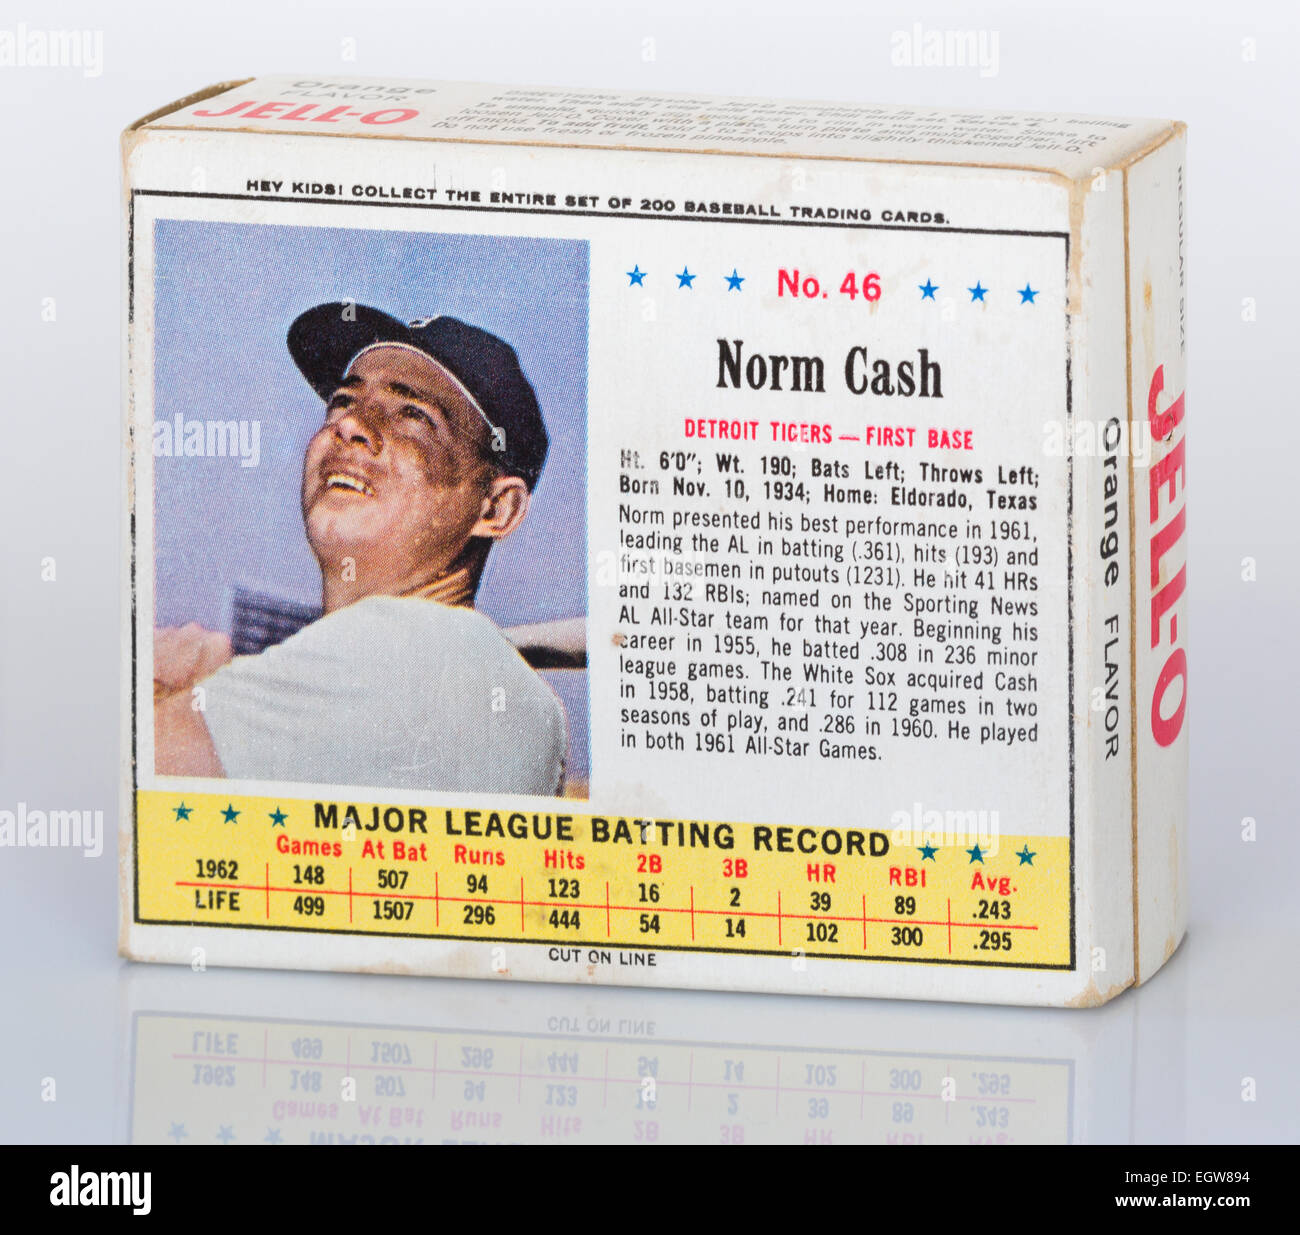 1963-Box von JELL-0 mit ein Major League Baseball Trading Card auf der Rückseite zeigt Norm Cash von den Detroit Tigers Stockfoto